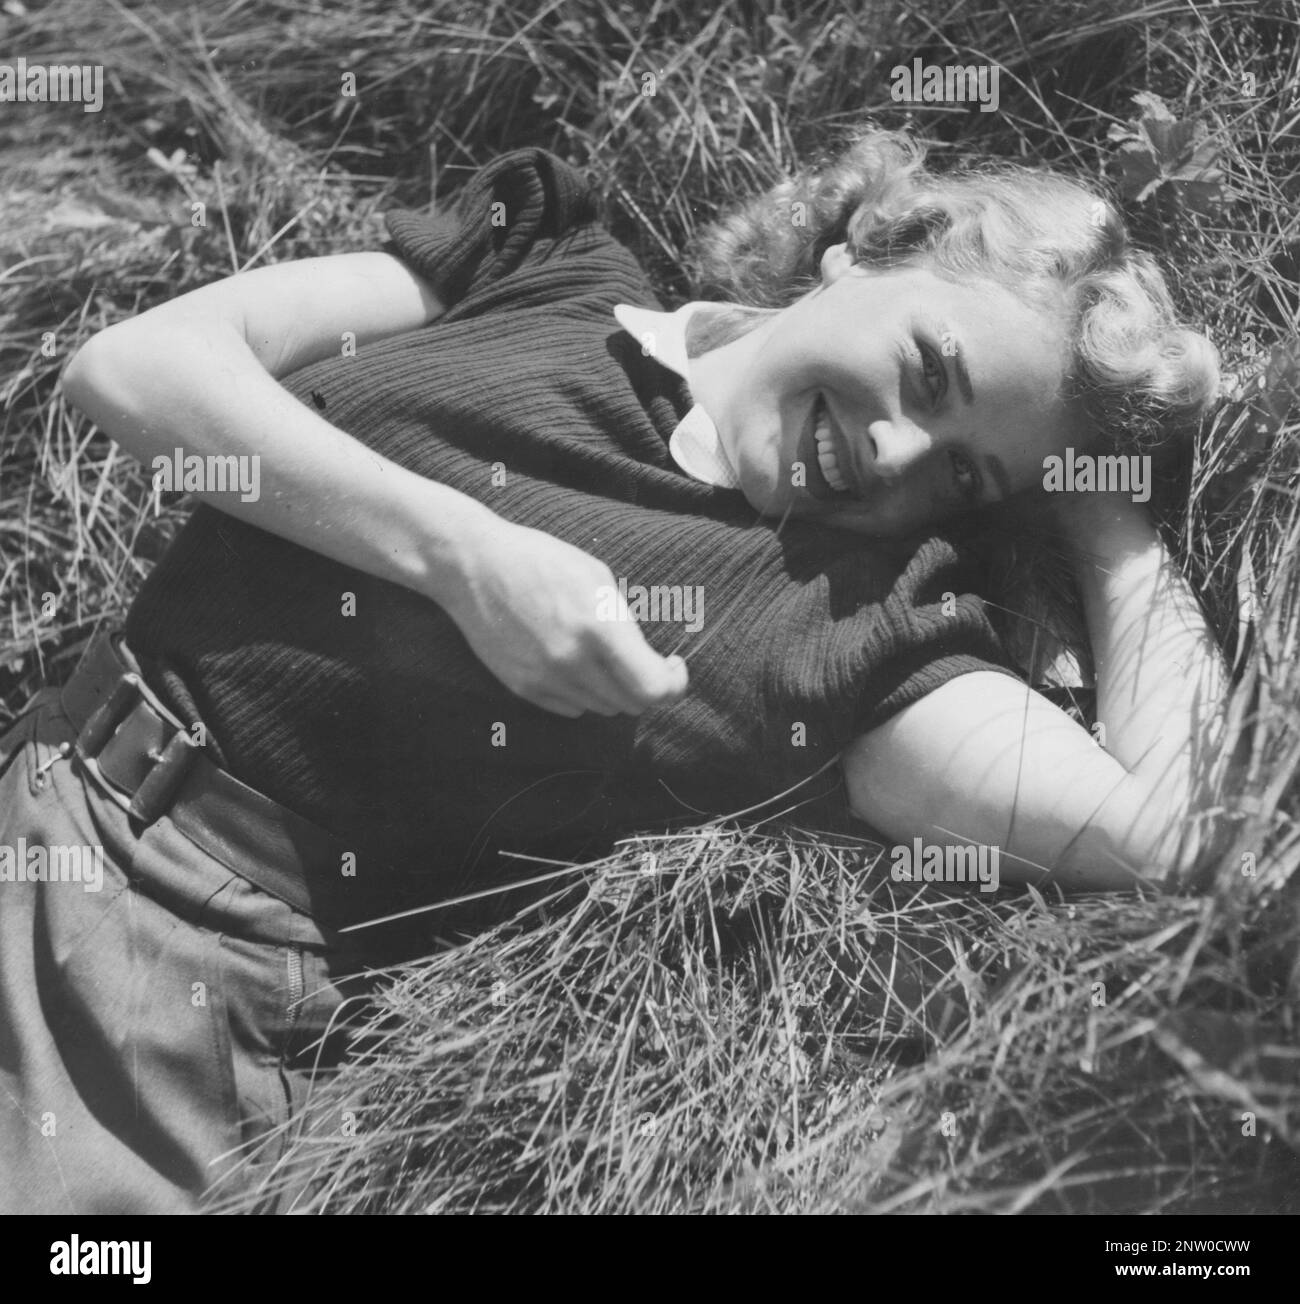 Actrice en 1940s. L'actrice suédoise Agneta Lagerfelt a photographié un jour d'été, couché dans l'herbe en regardant dans la caméra. Suède 1942 Kristoffersson Banque D'Images